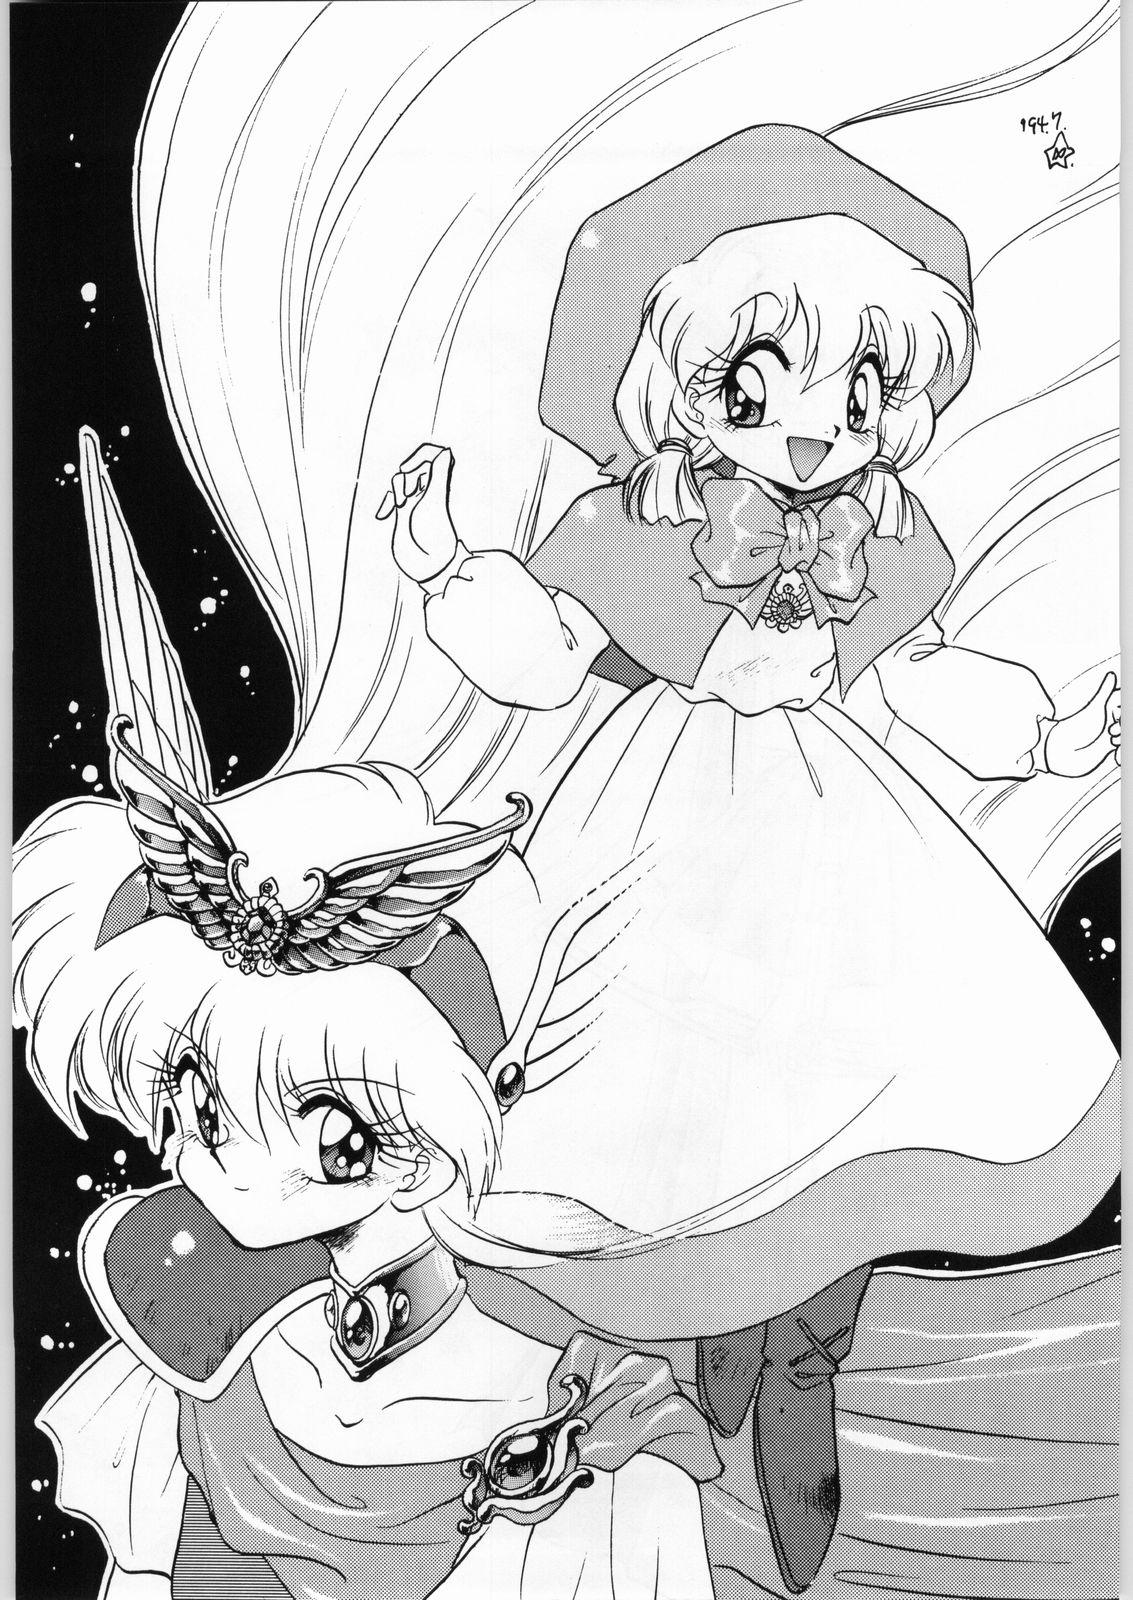 Putita Dance of Princess 3 - Sailor moon Tenchi muyo Akazukin cha cha Minky momo Ng knight lamune and 40 Stroking - Page 4